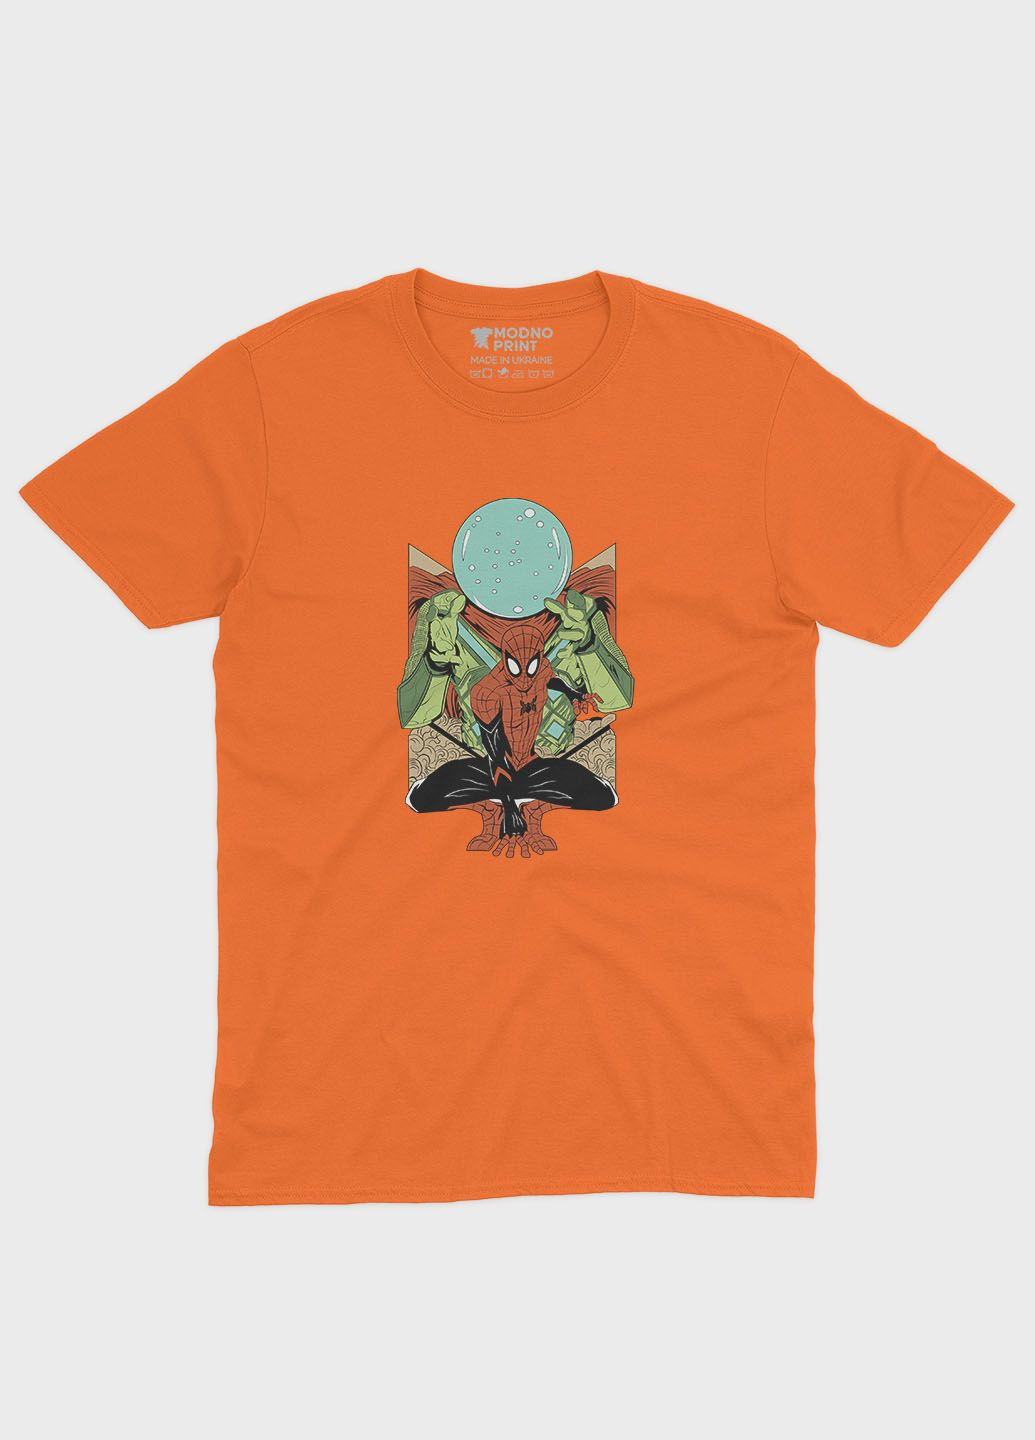 Оранжевая демисезонная футболка для мальчика с принтом супергероя - человек-паук (ts001-1-ora-006-014-020-b) Modno